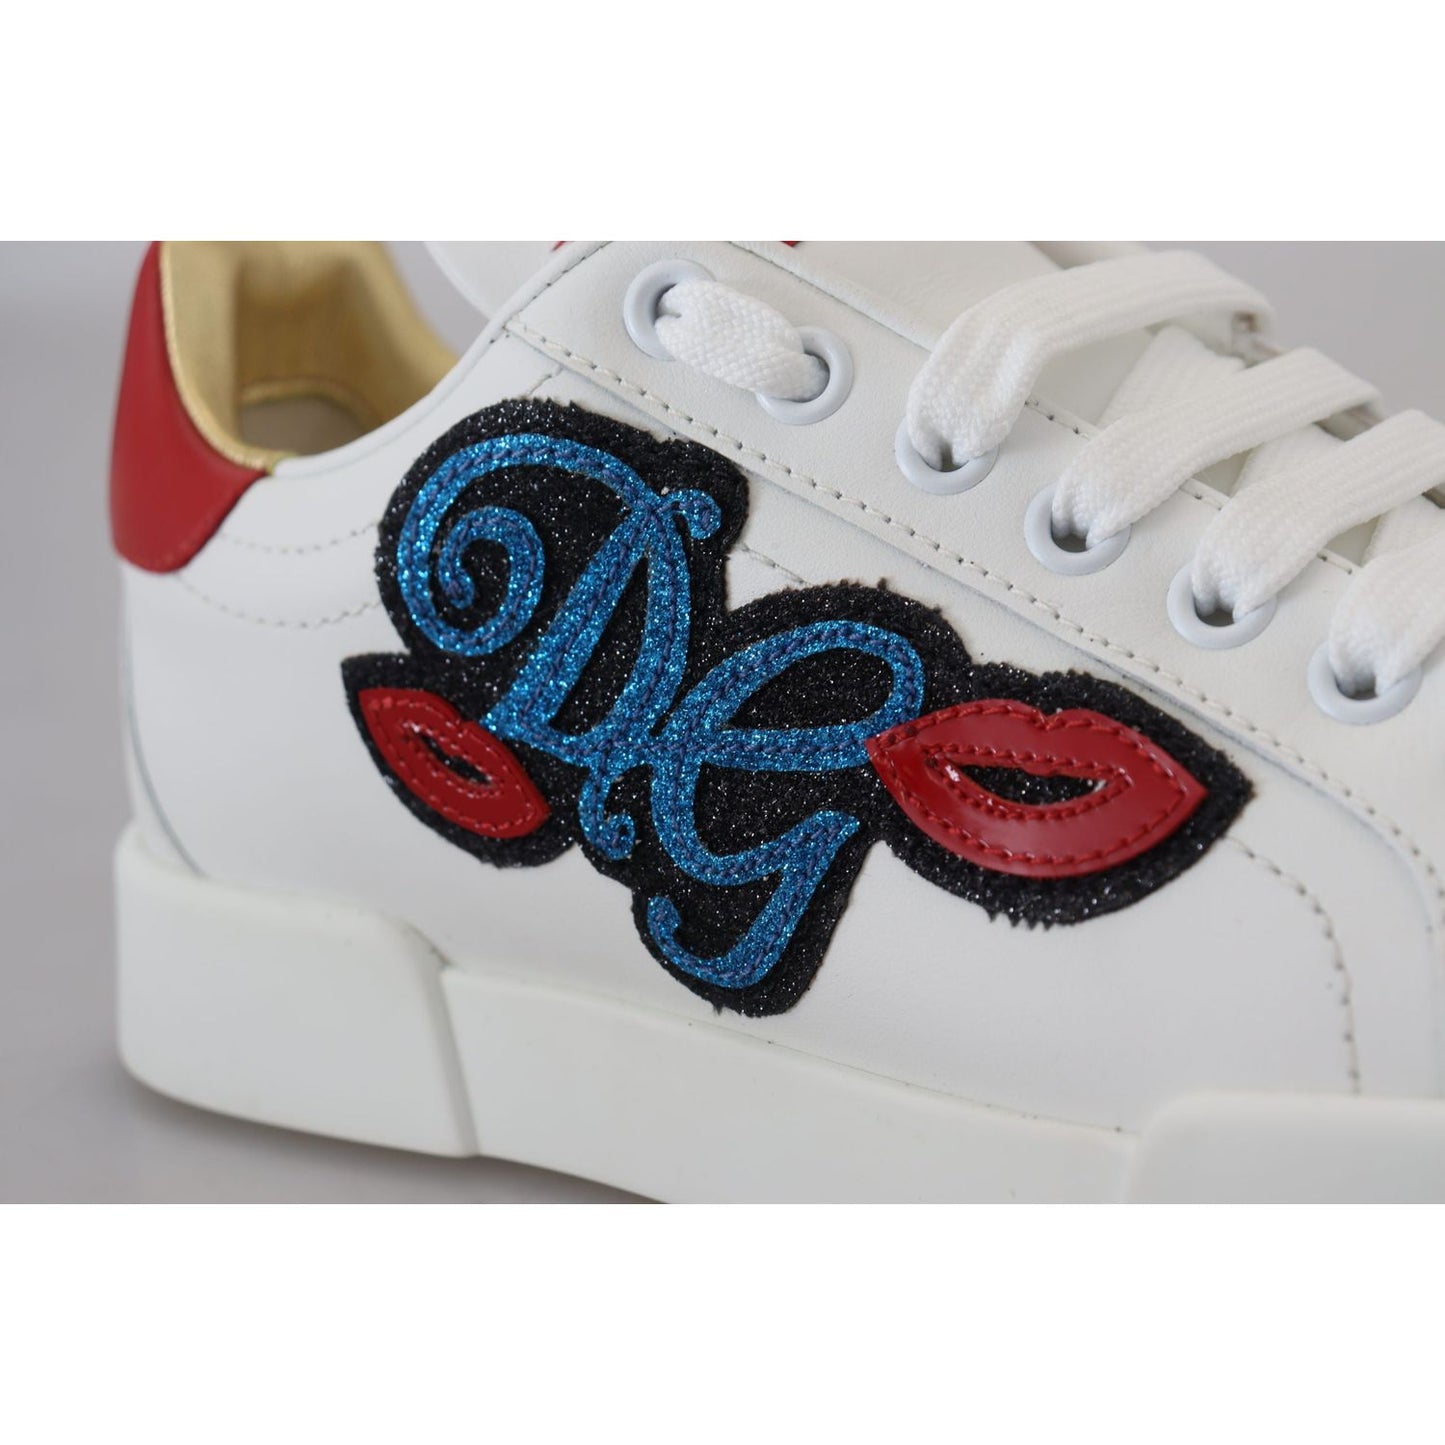 Dolce & Gabbana Sparkling White Portofino Sneakers white-portofino-logo-classic-sneakers-shoes